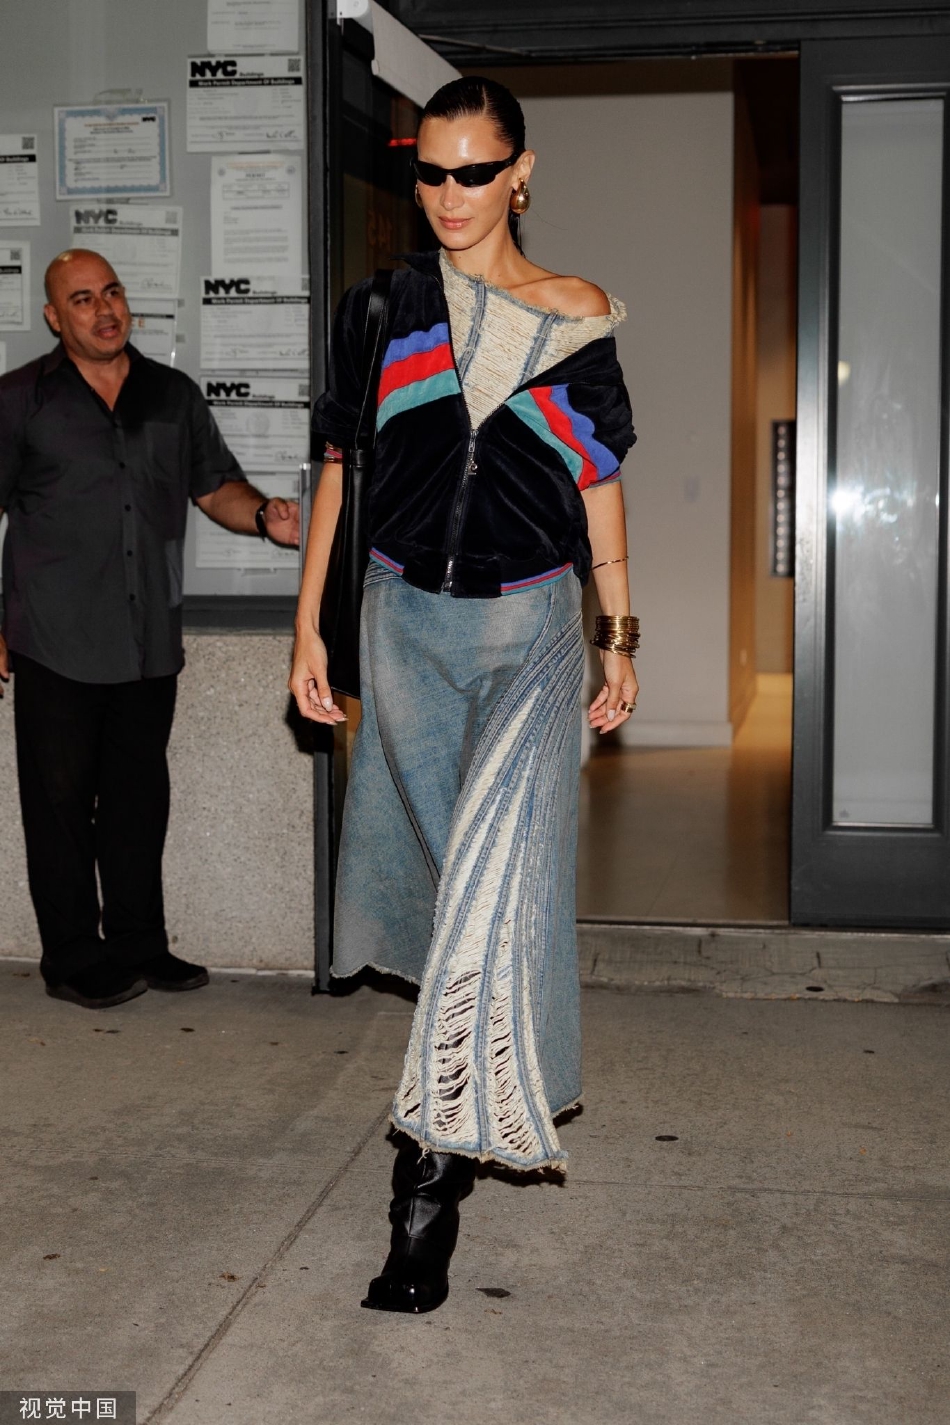 组图:超模贝拉·哈迪德穿着时髦现身纽约时装周活动现场